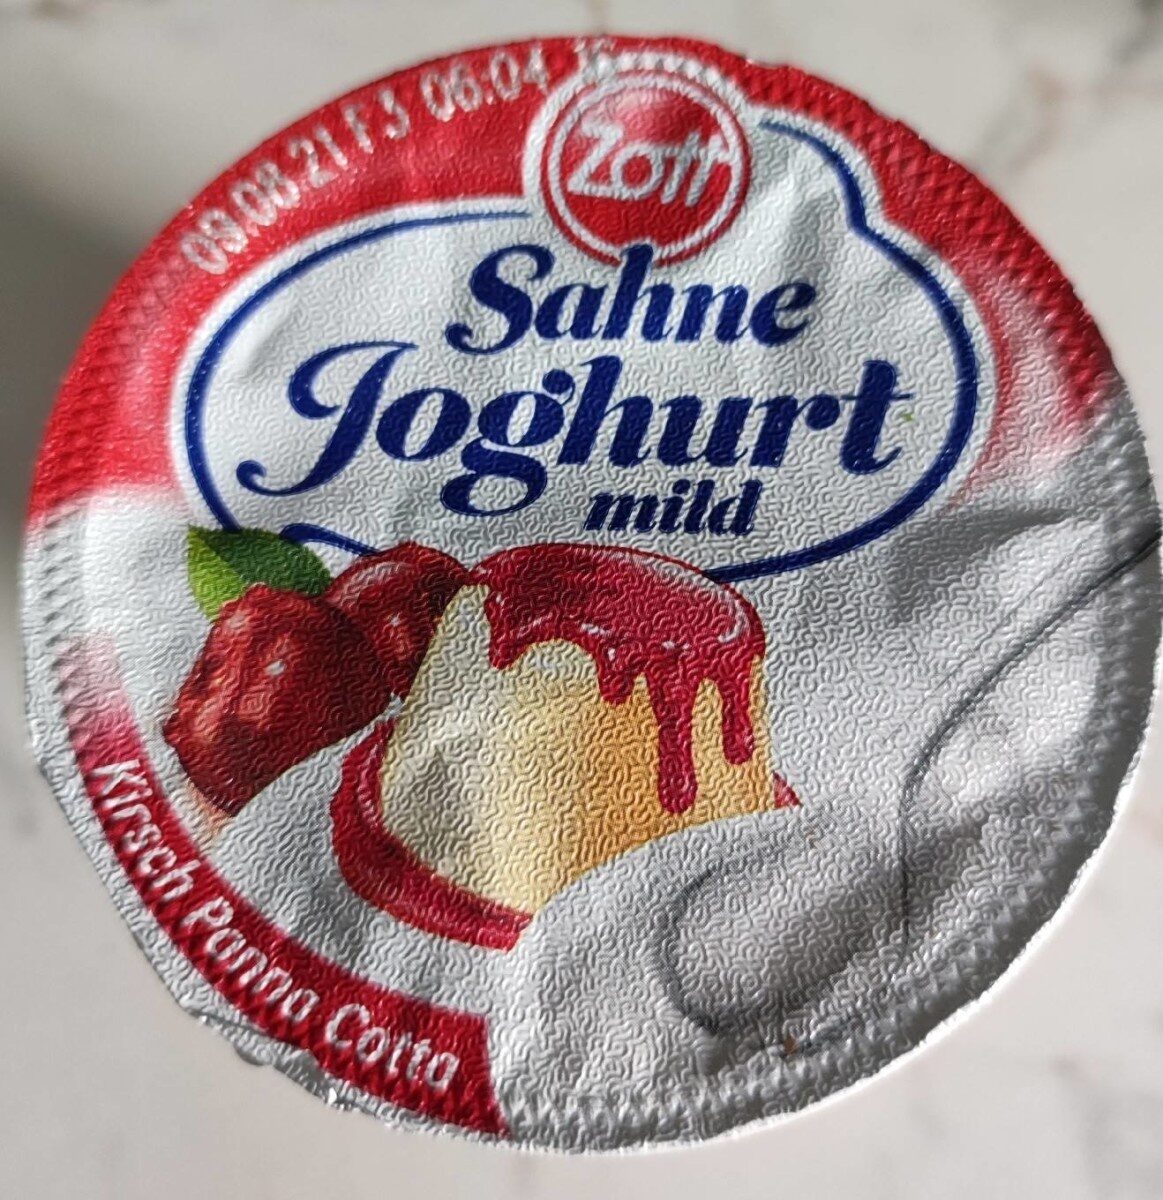 Sahne Joghurt Kirsch Panna Cotta - Product - de